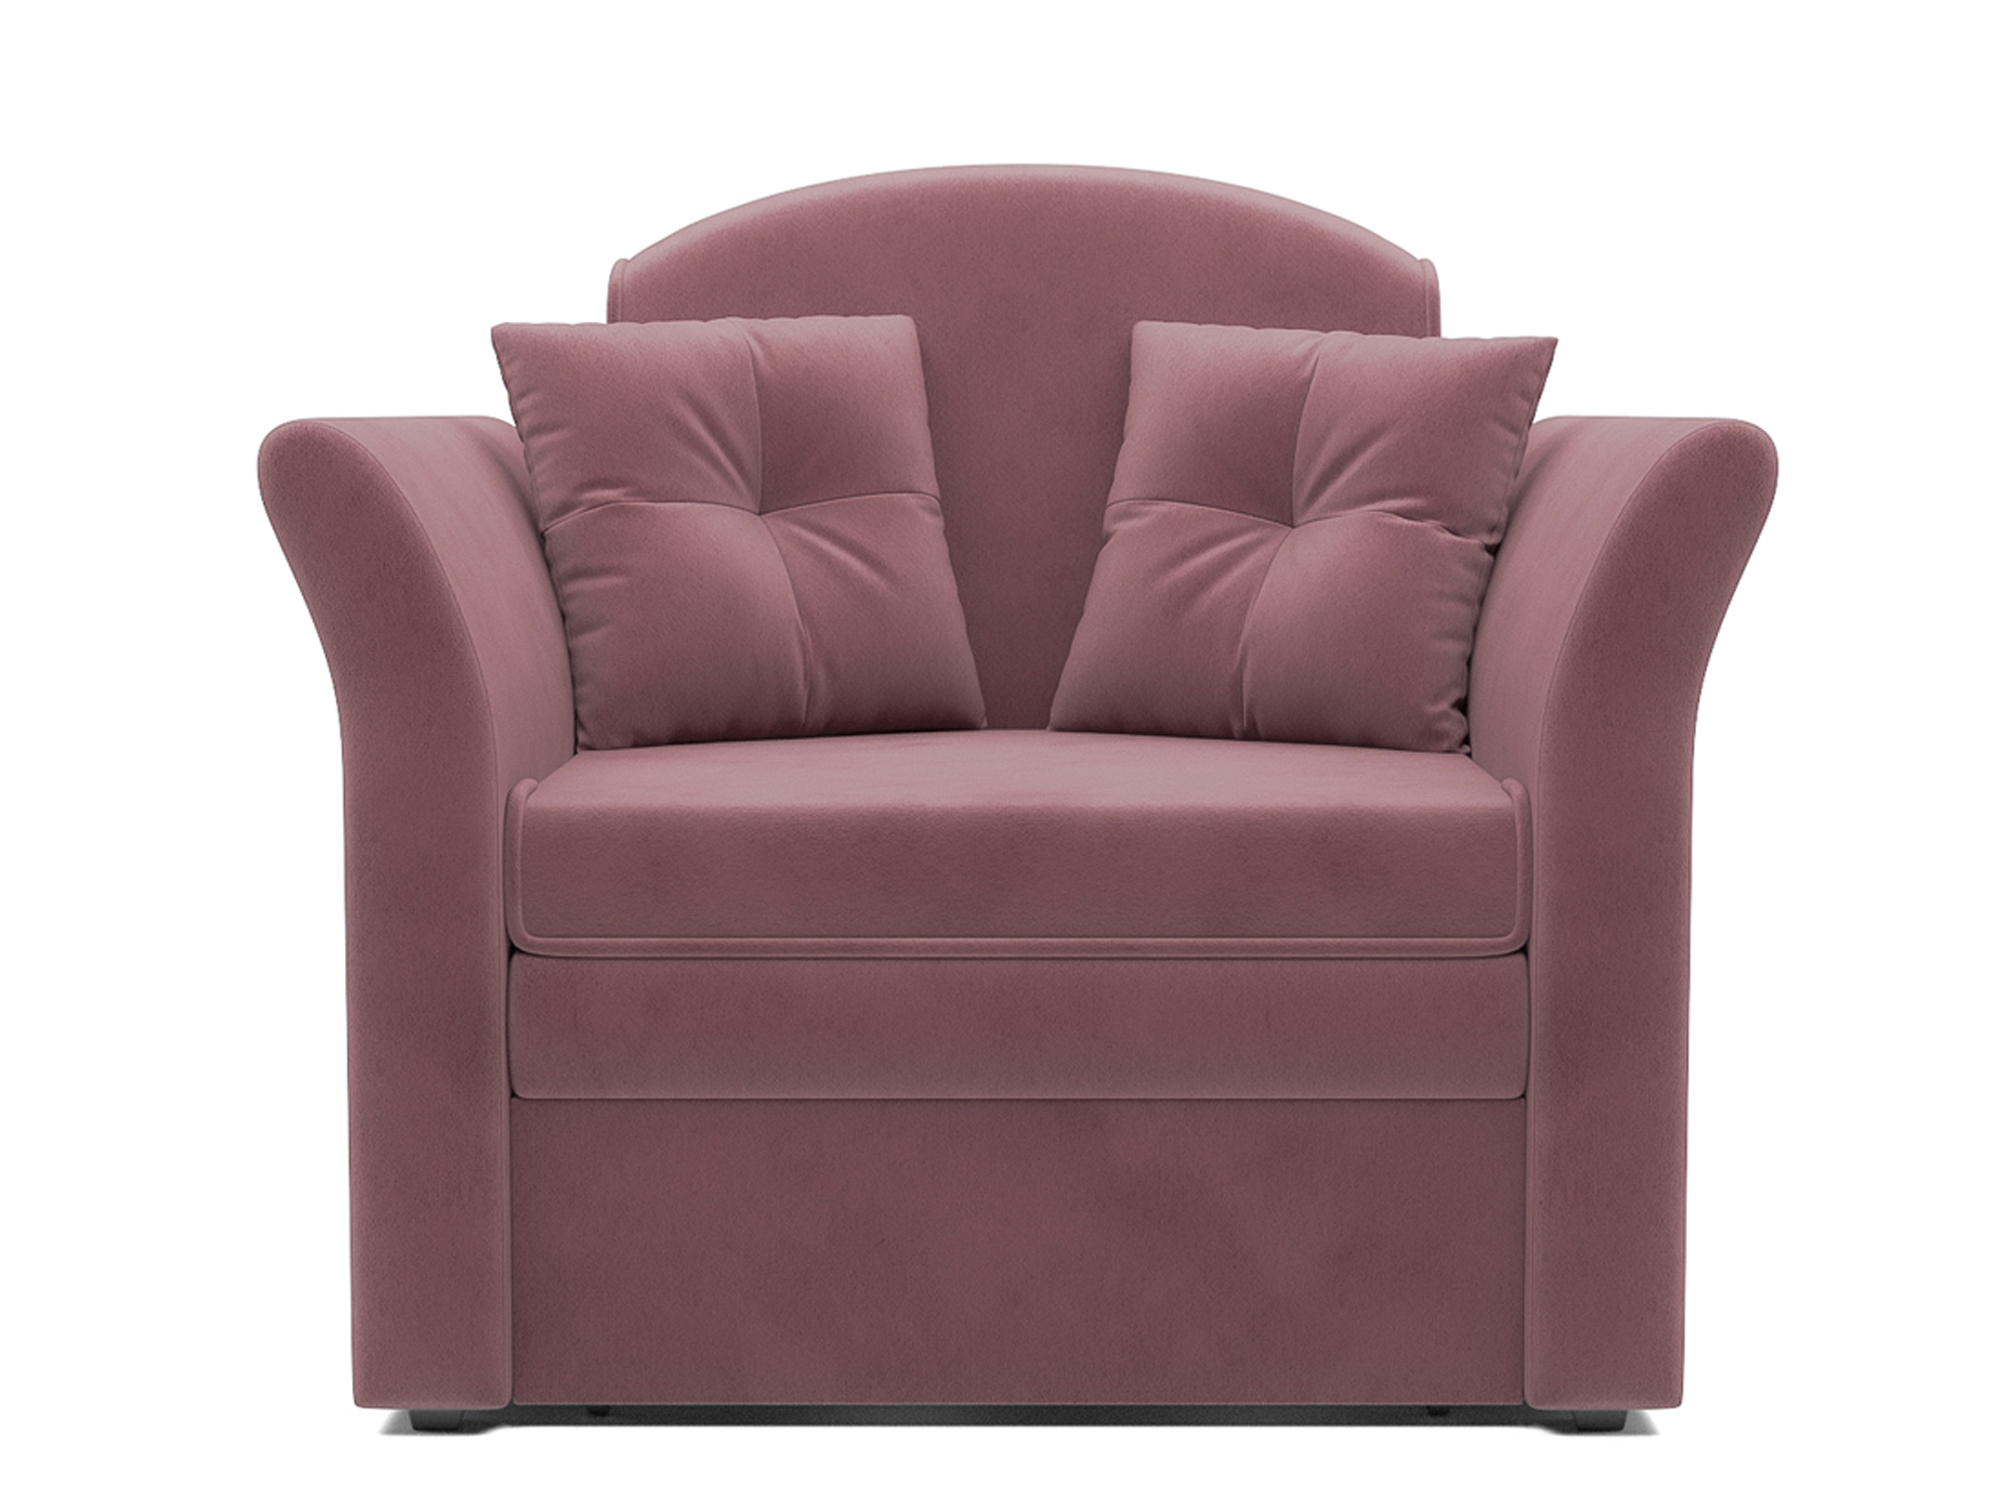 Кресло-кровать Малютка 2 MebelVia Розовый, Велюр, ДСП, Брус сосны, Фанера кресло кровать малютка 2 mebelvia розовый велюр дсп брус сосны фанера